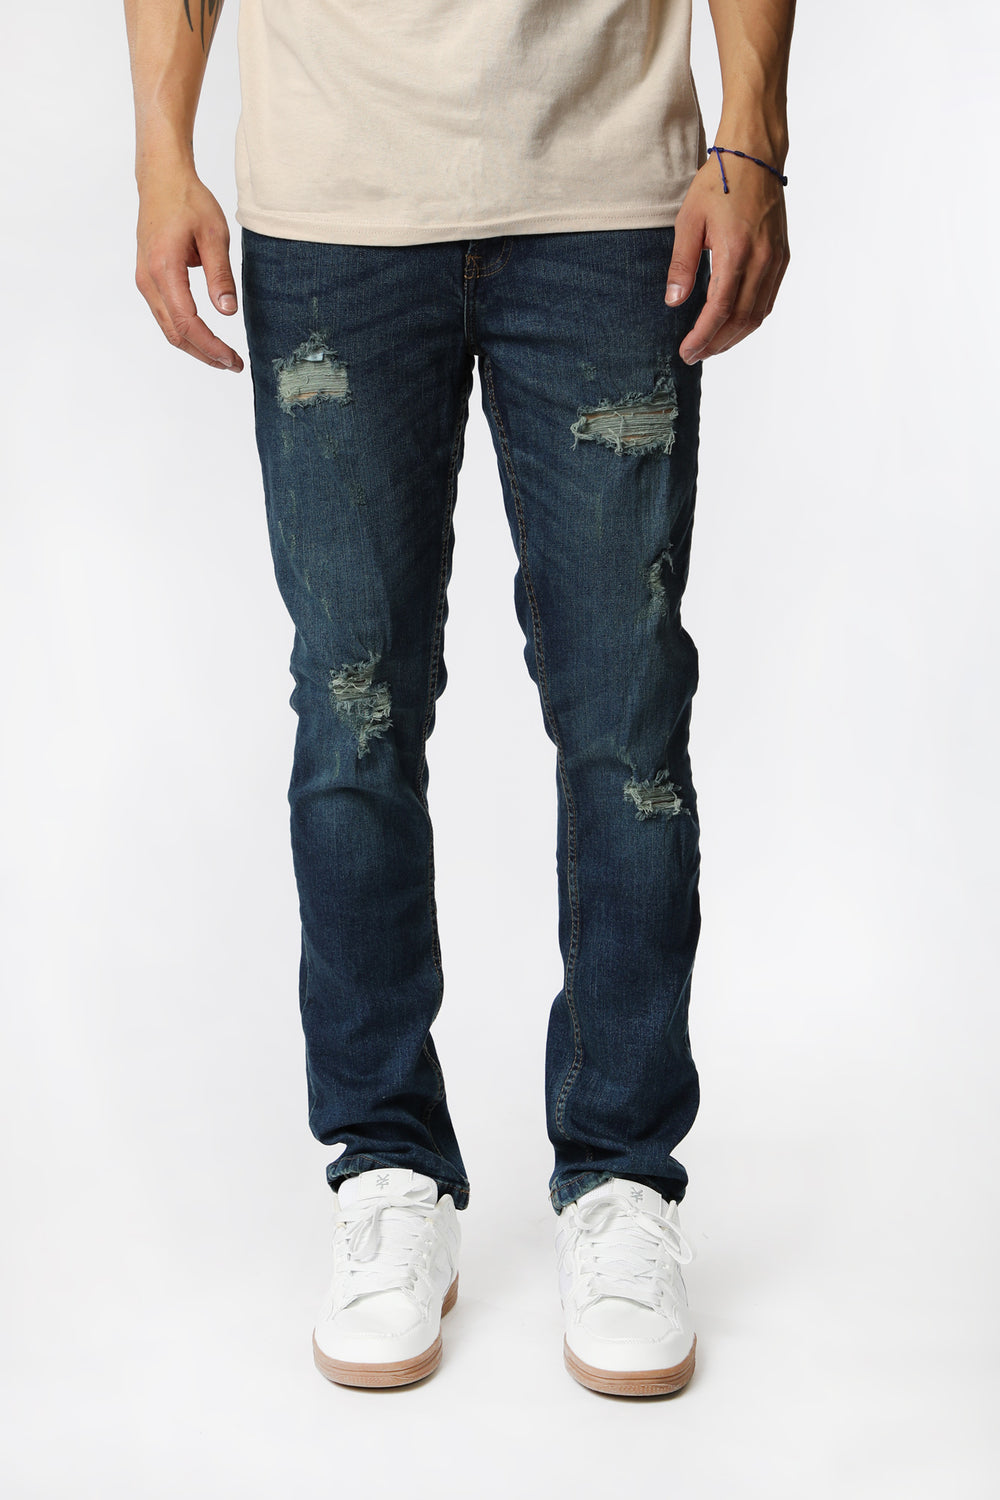 West49 Mens Distressed Slim Jeans Rinse Denim